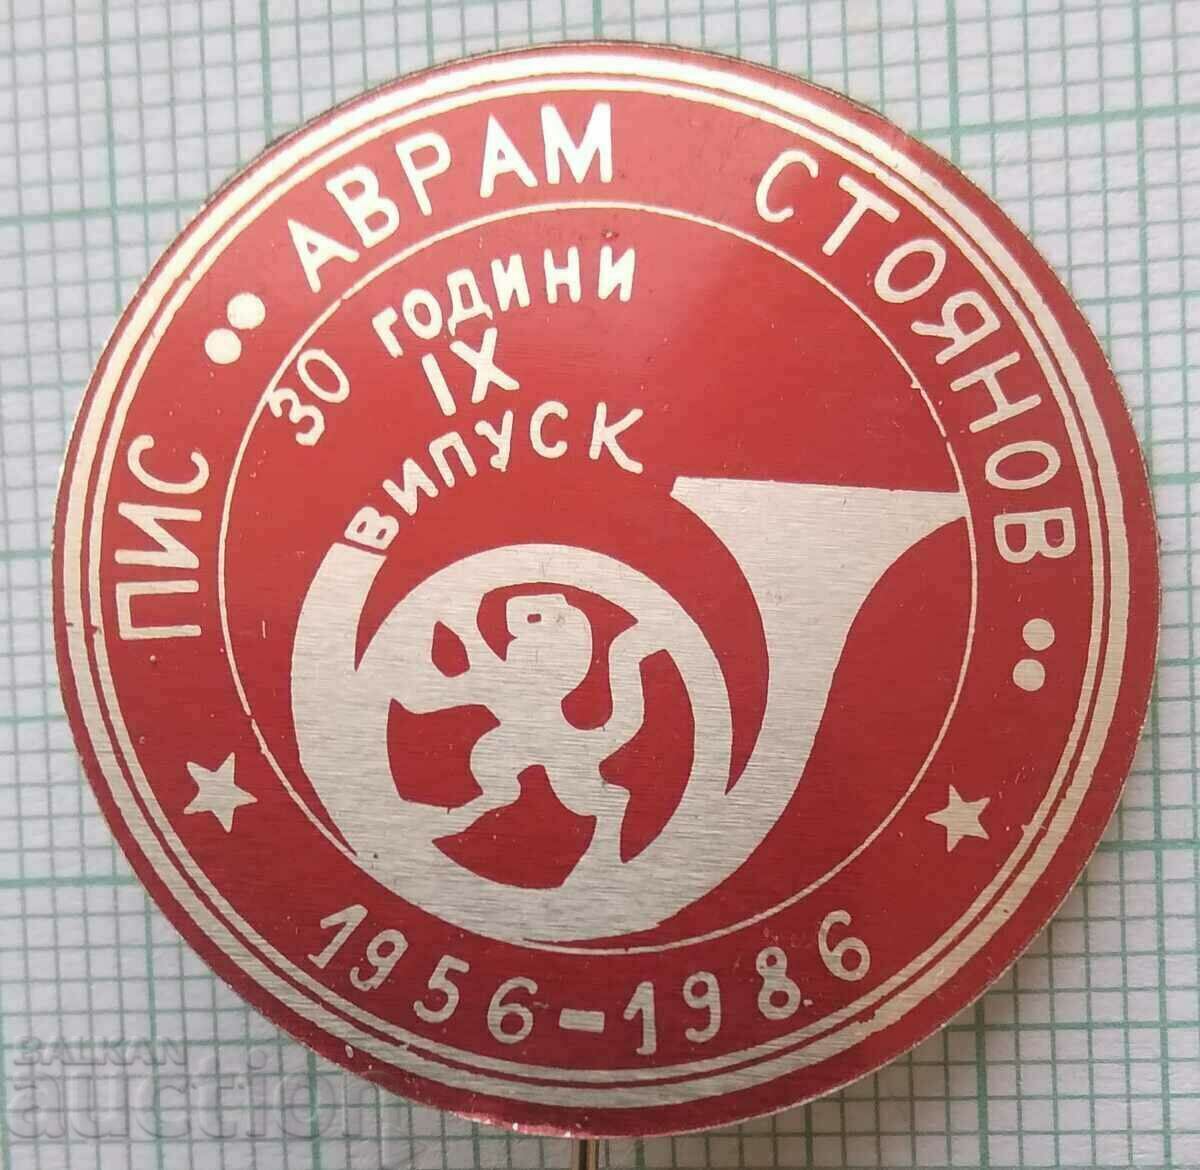 14466 Semi-higher Institute of Commun. Avram Stoyanov - 30 years PIS